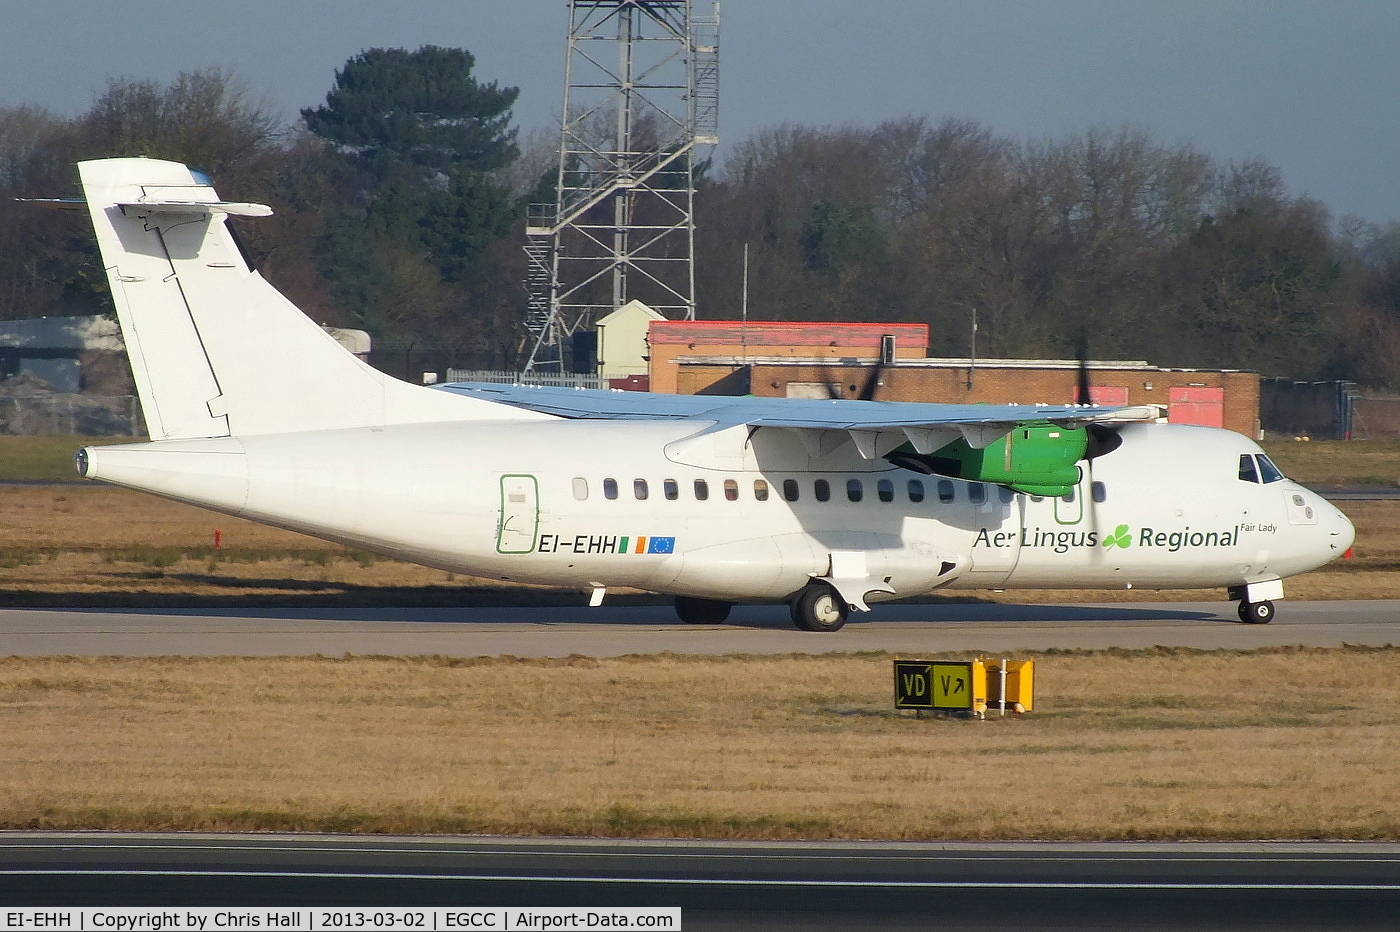 EI-EHH, 1990 ATR 42-300 C/N 196, now wearing Aer Lingus Regional titles